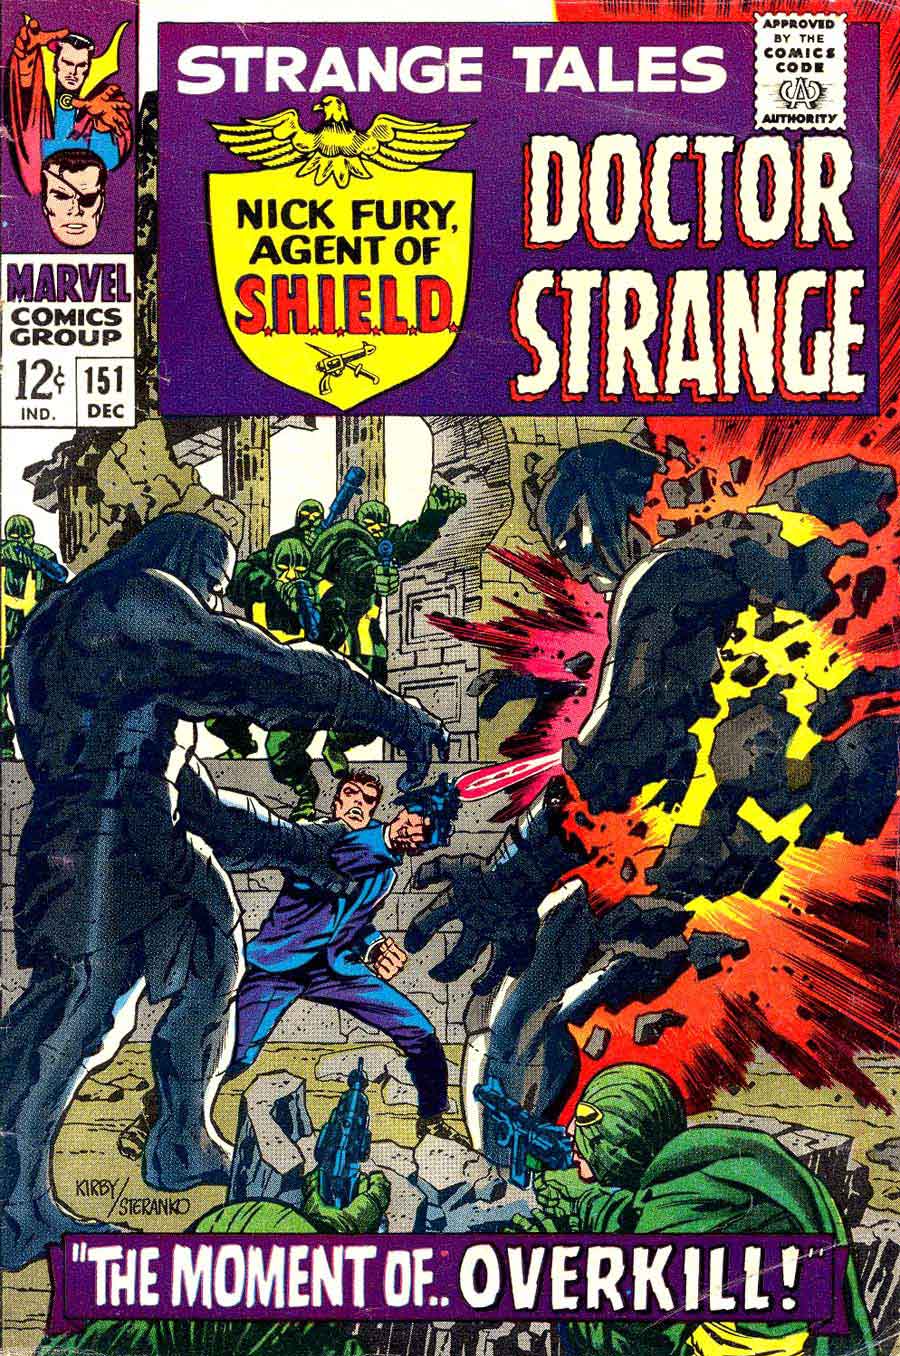 Strange Tales v1 #151 nick fury shield comic book cover art by Jim Steranko